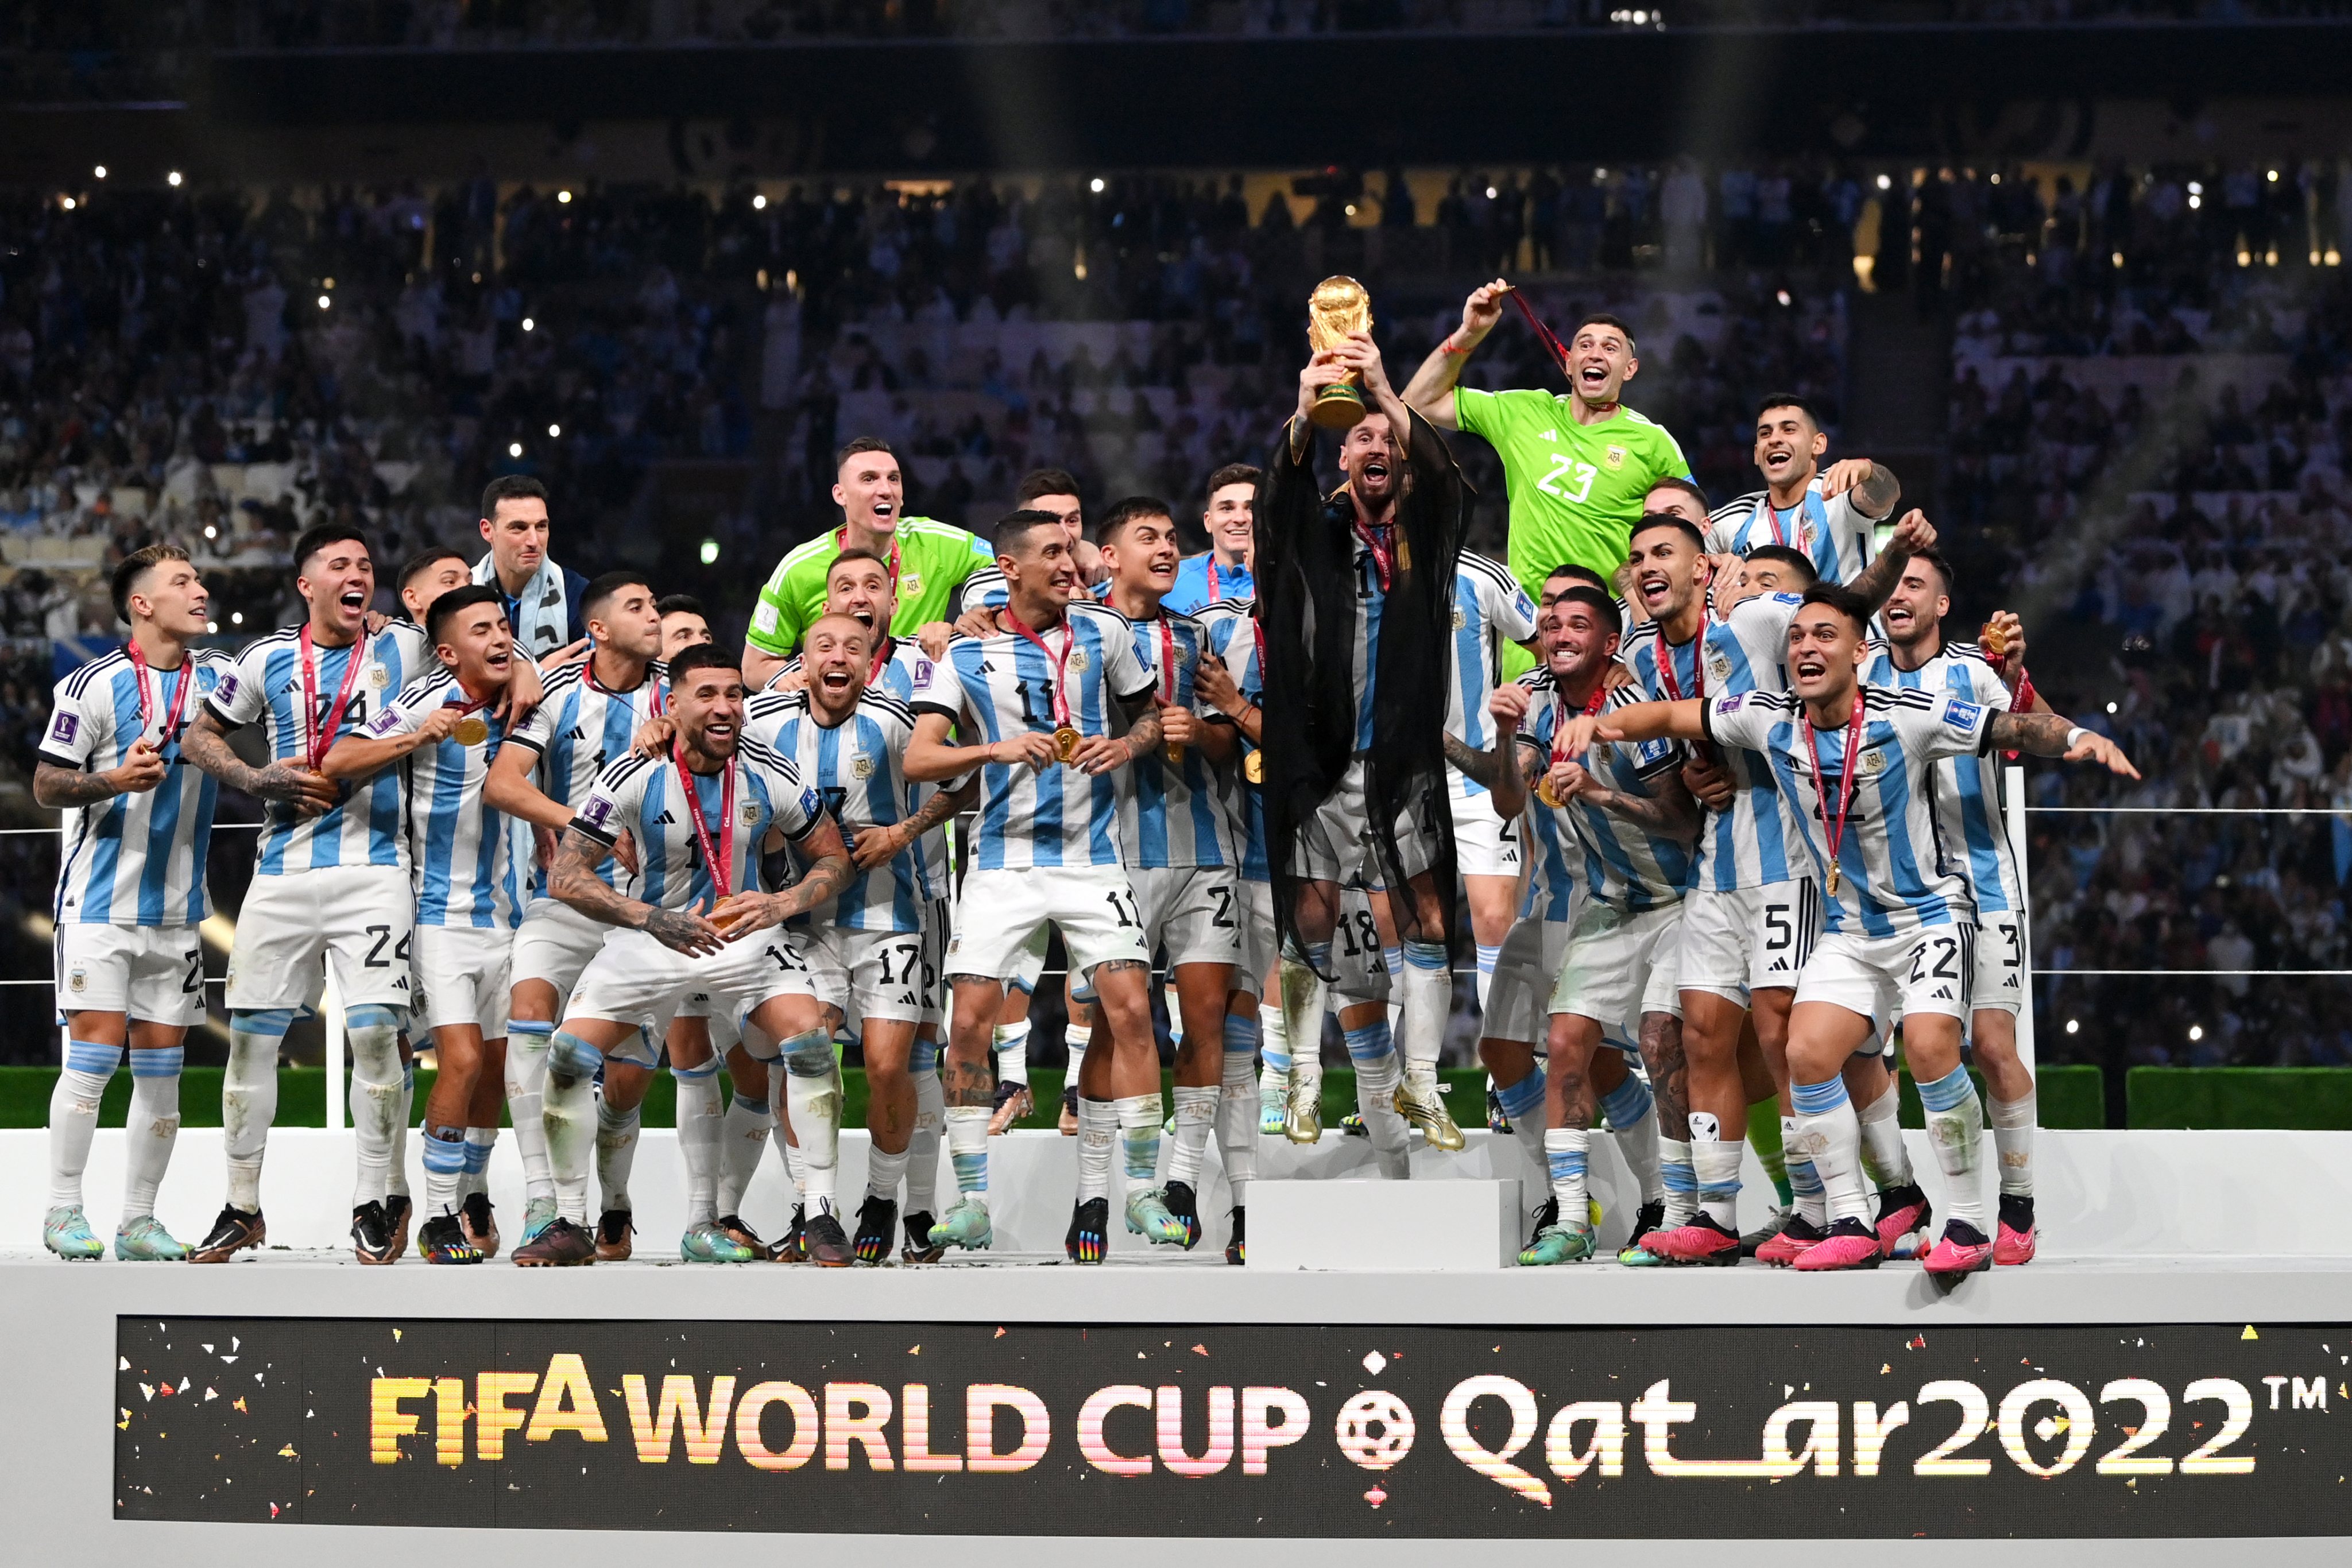 Argentina é campeã da Copa do Mundo de Futebol 2022 - Bodog